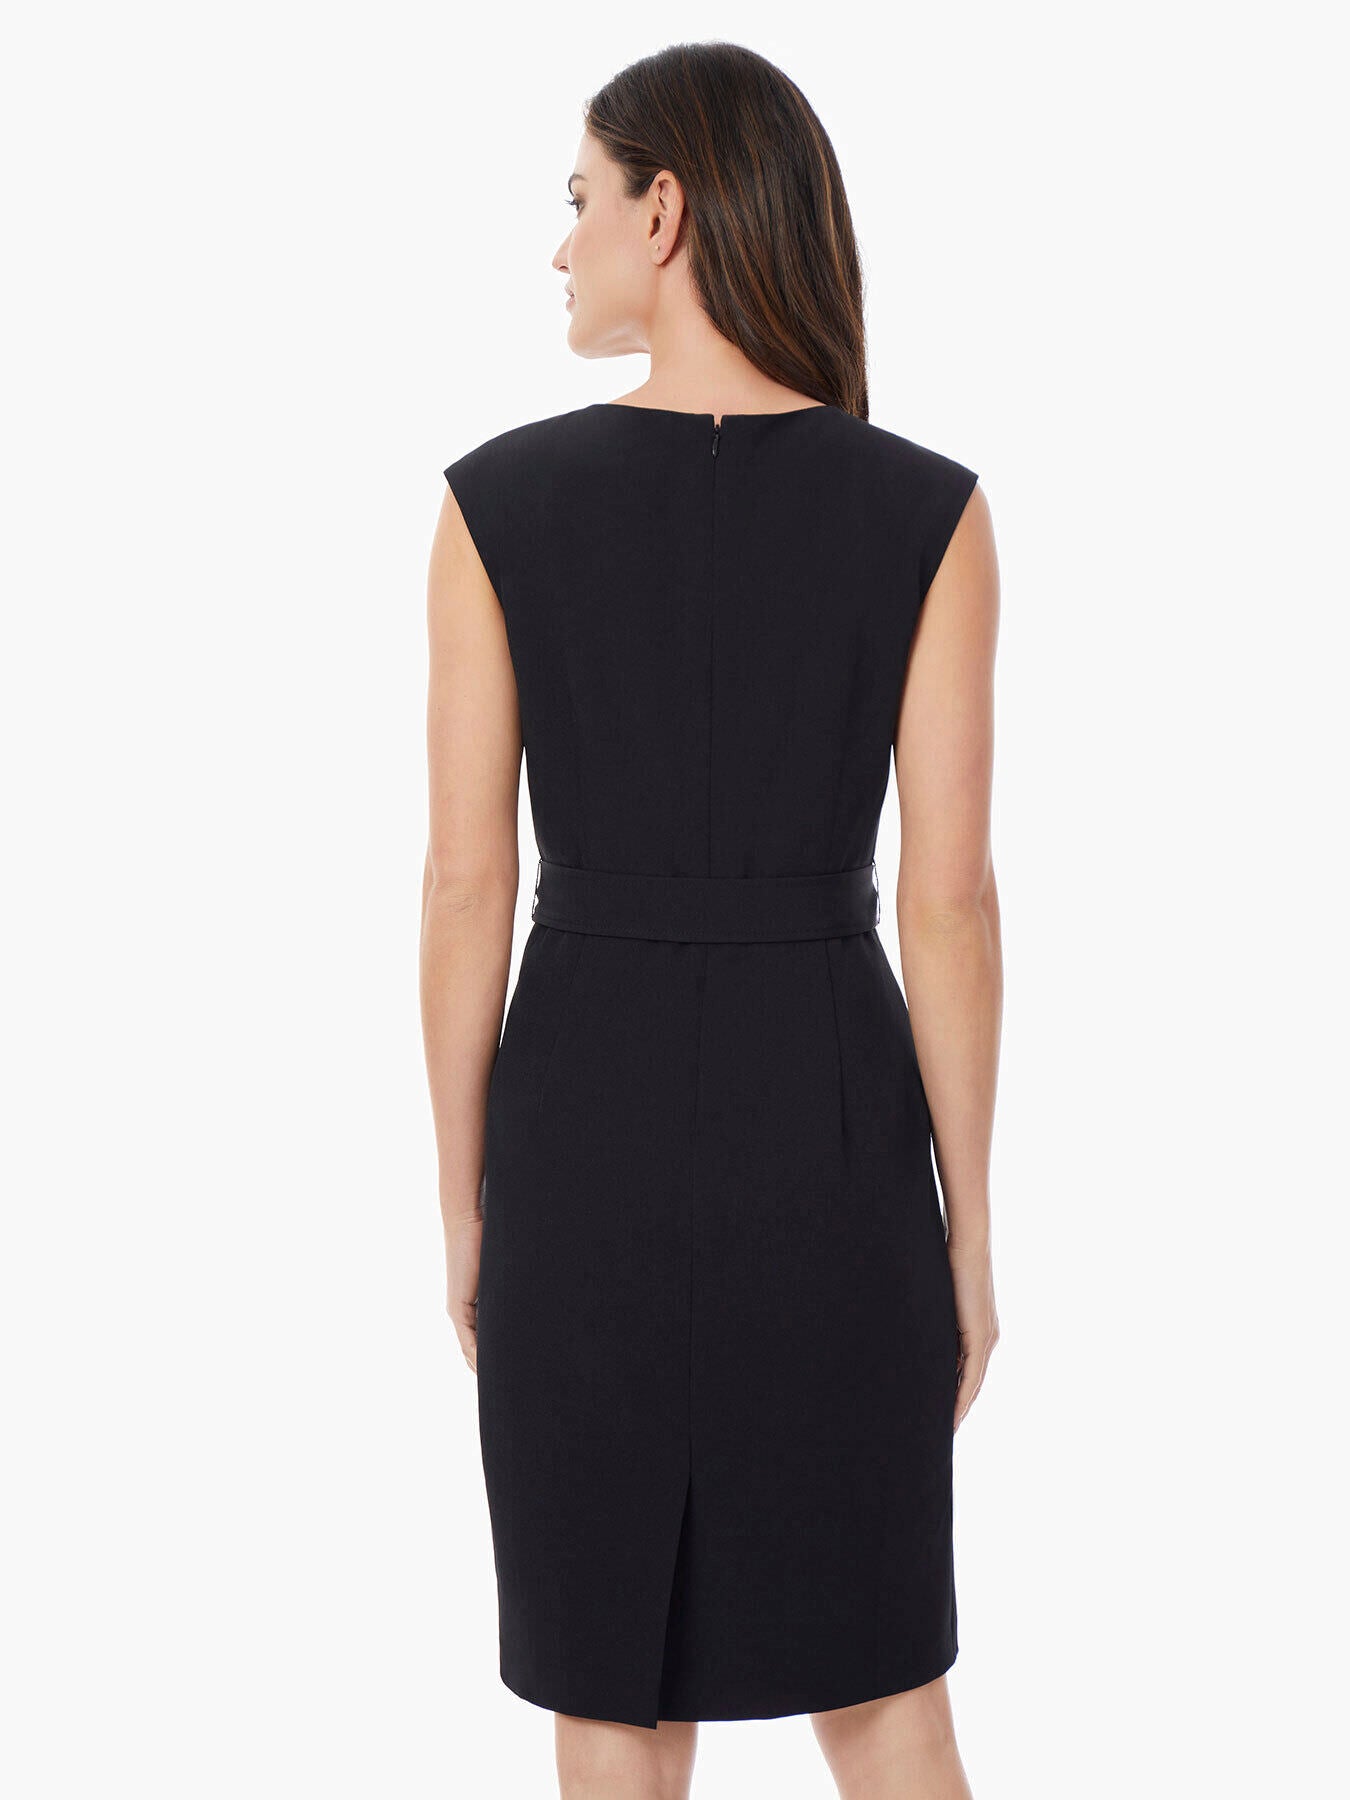 Kasper, Dresses, Kasper Separates 2 Sleeveless Lined Polyester Black Fall  Dress Office Date